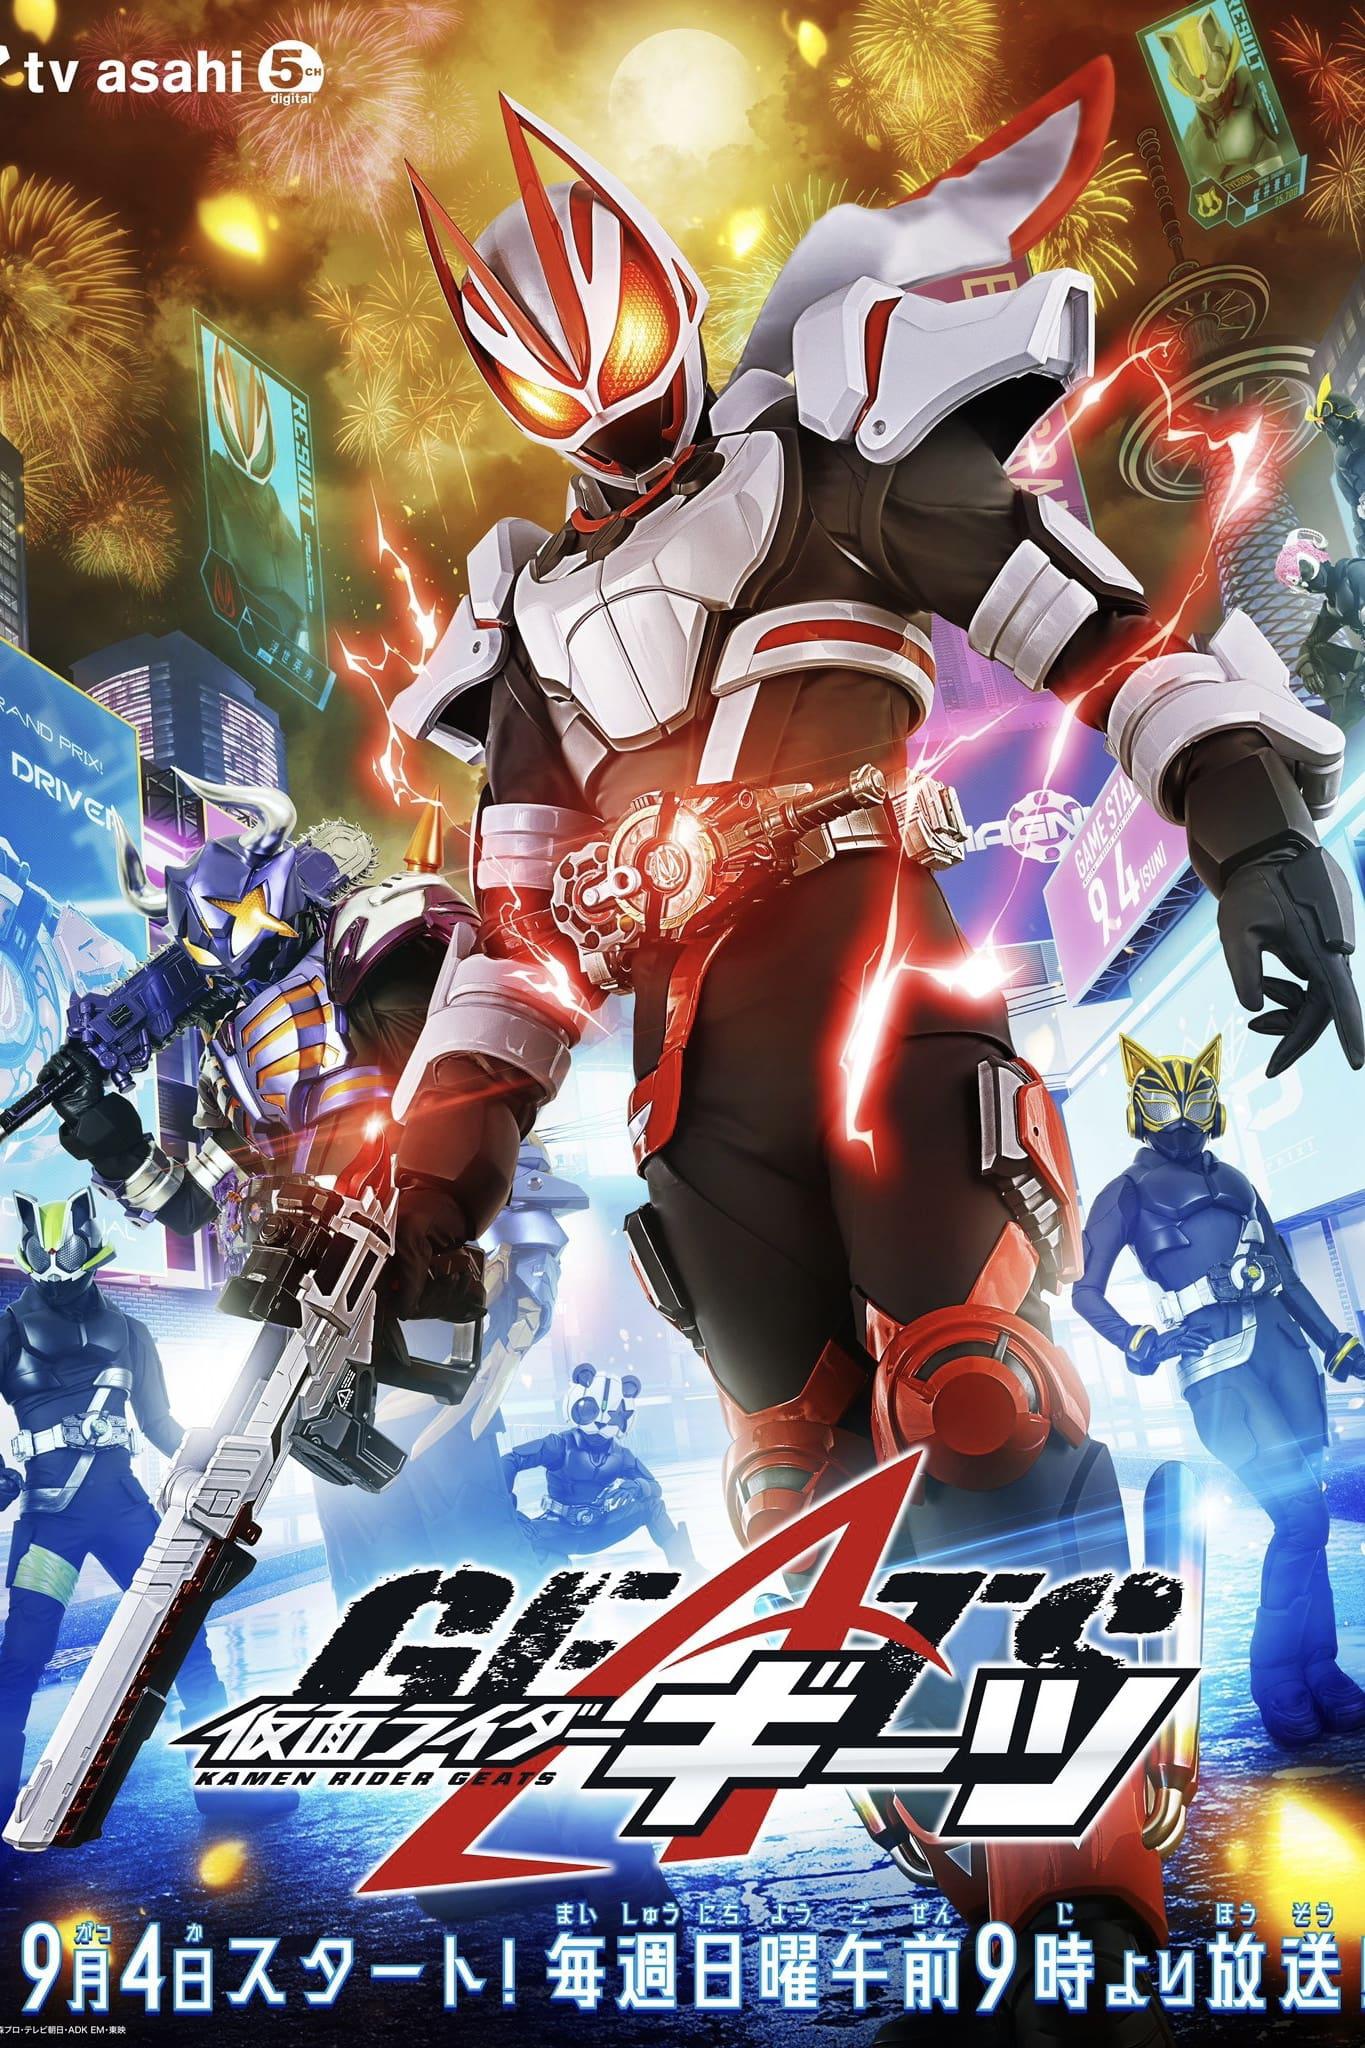 TV ratings for Kamen Rider Geats (仮面ライダーギーツ) in Australia. TV Asahi TV series